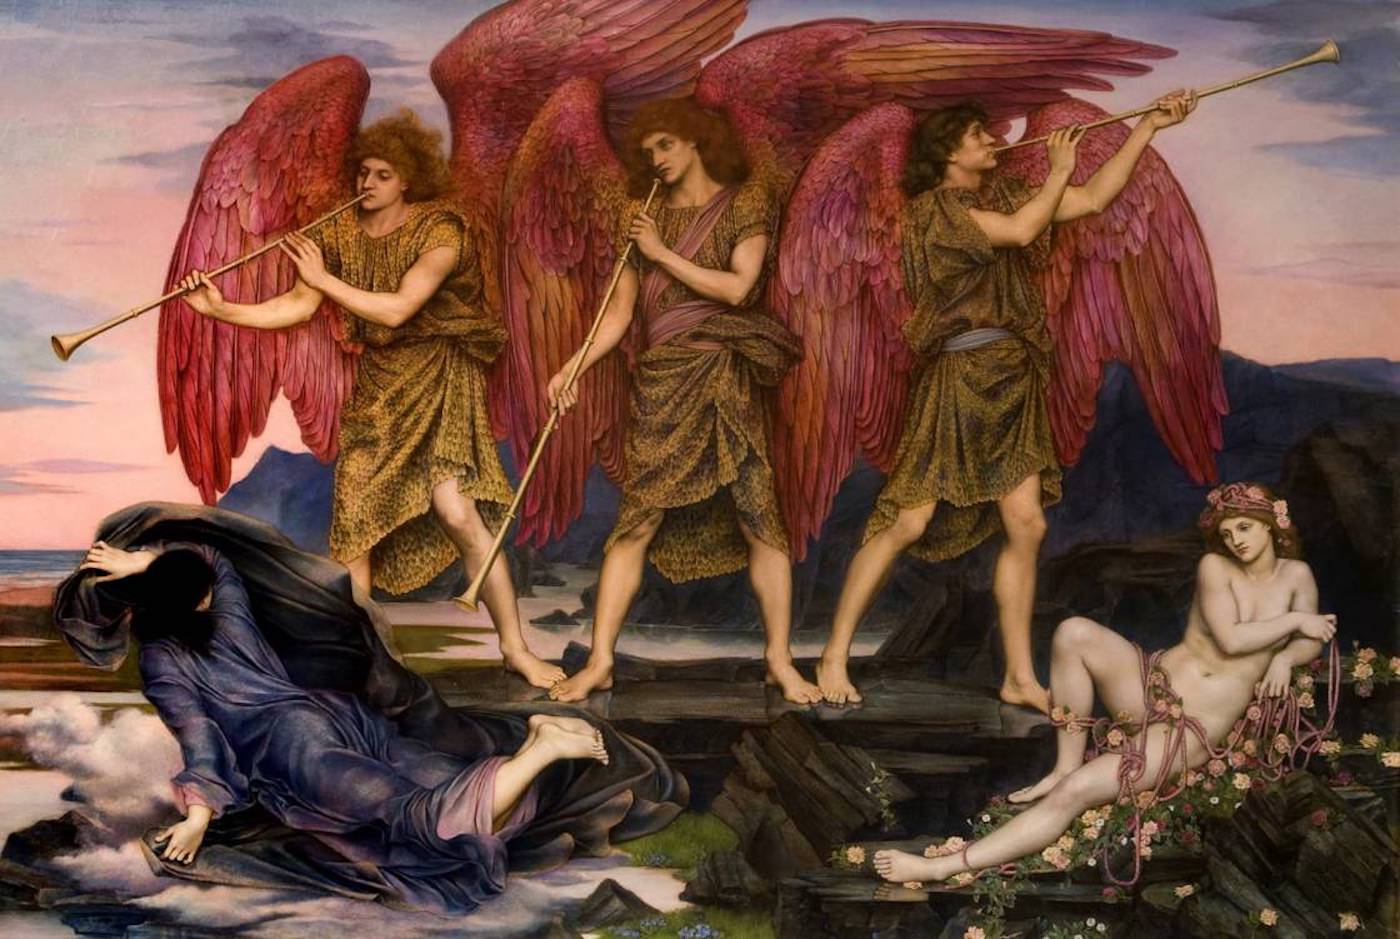 オーロラの勝利 by Evelyn de Morgan - 1877〜78年もしくは1886年頃 - 120 × 170 cm 